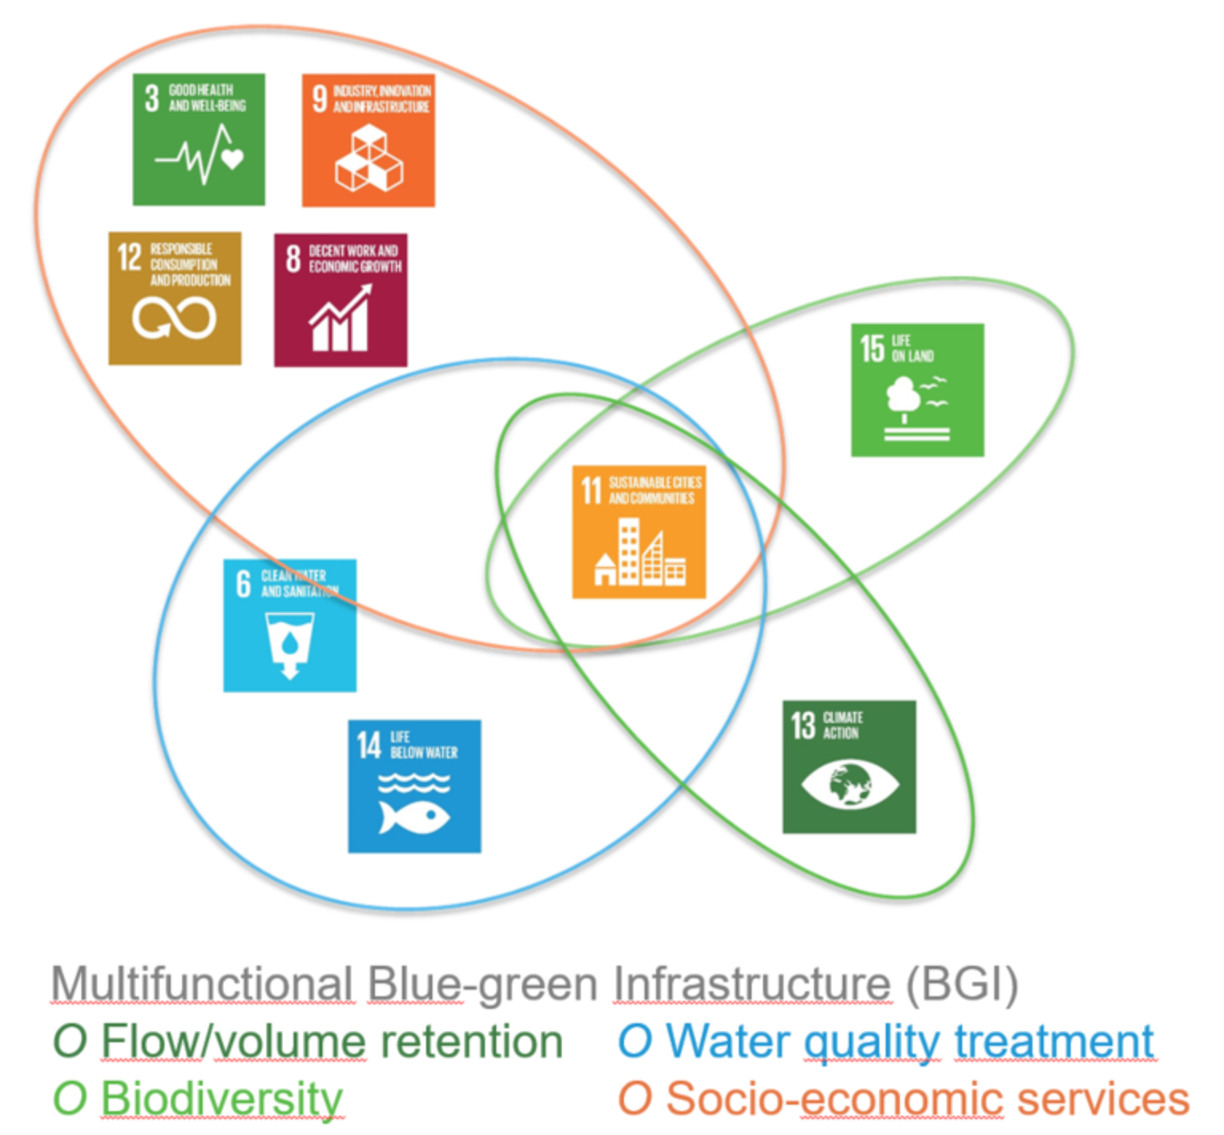 Figur: Multifunktionell BGI: Ekosystemtjänster och anslutna SDGs